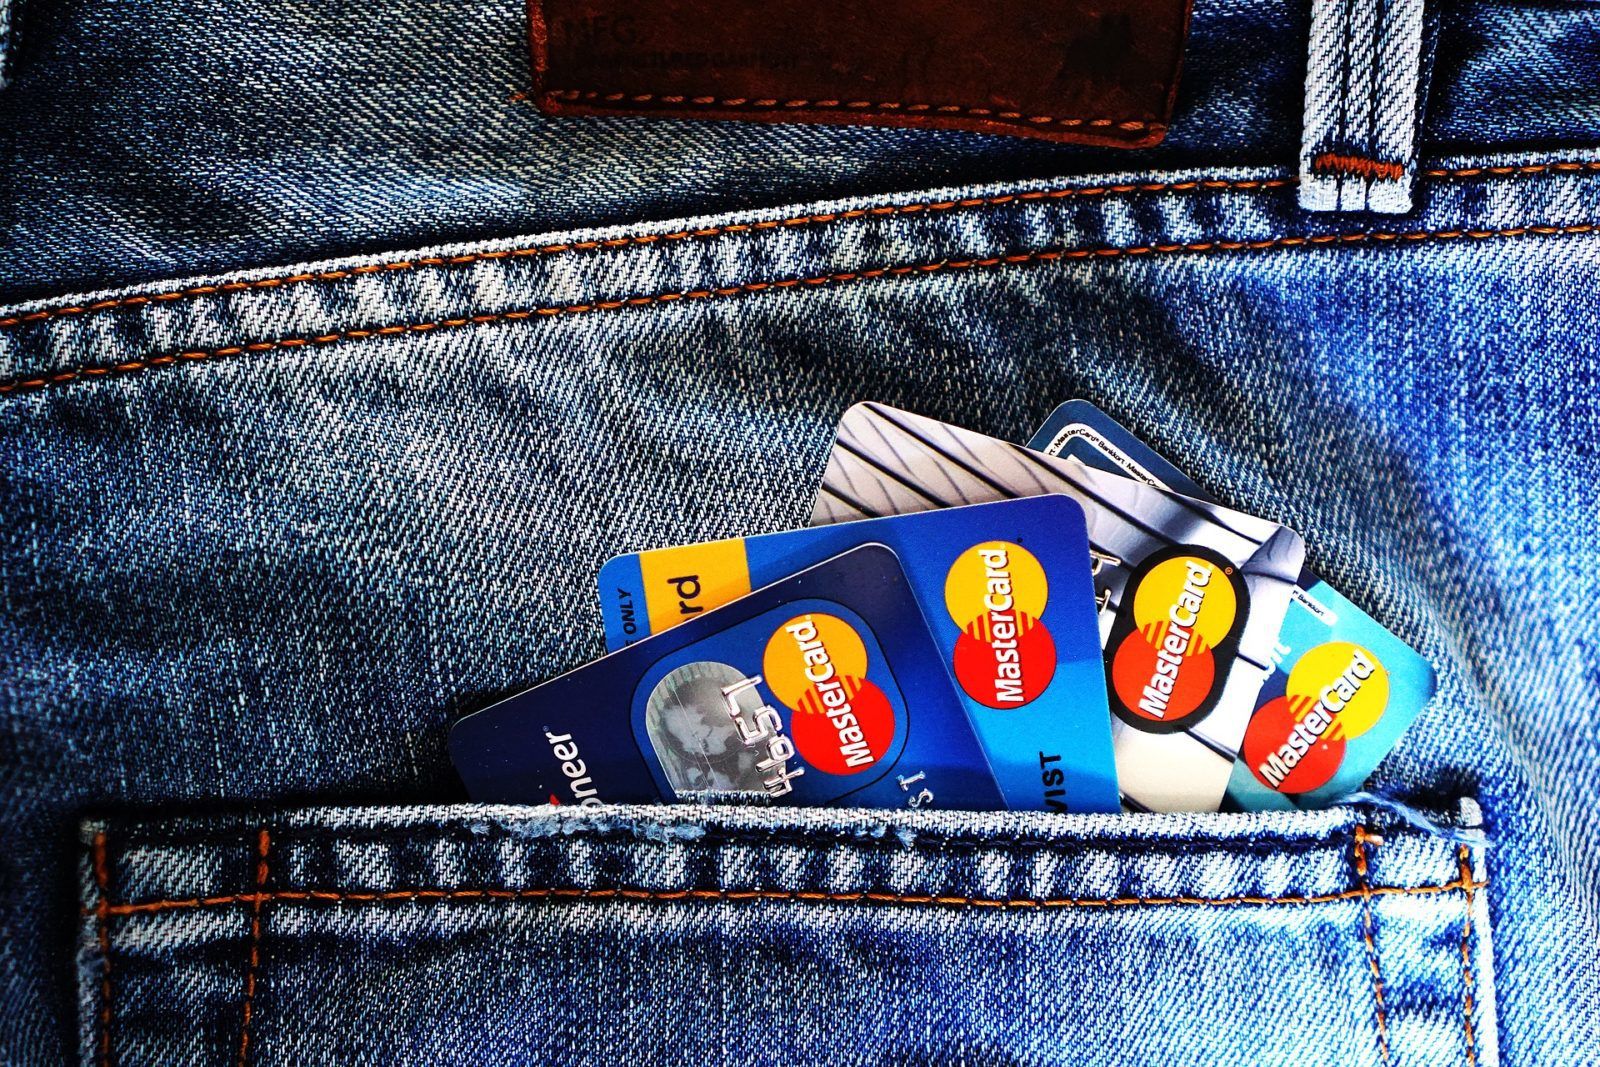 Jaké jsou výhody kreditní karty? Levná půjčka, pojištění i slevy na nákupy